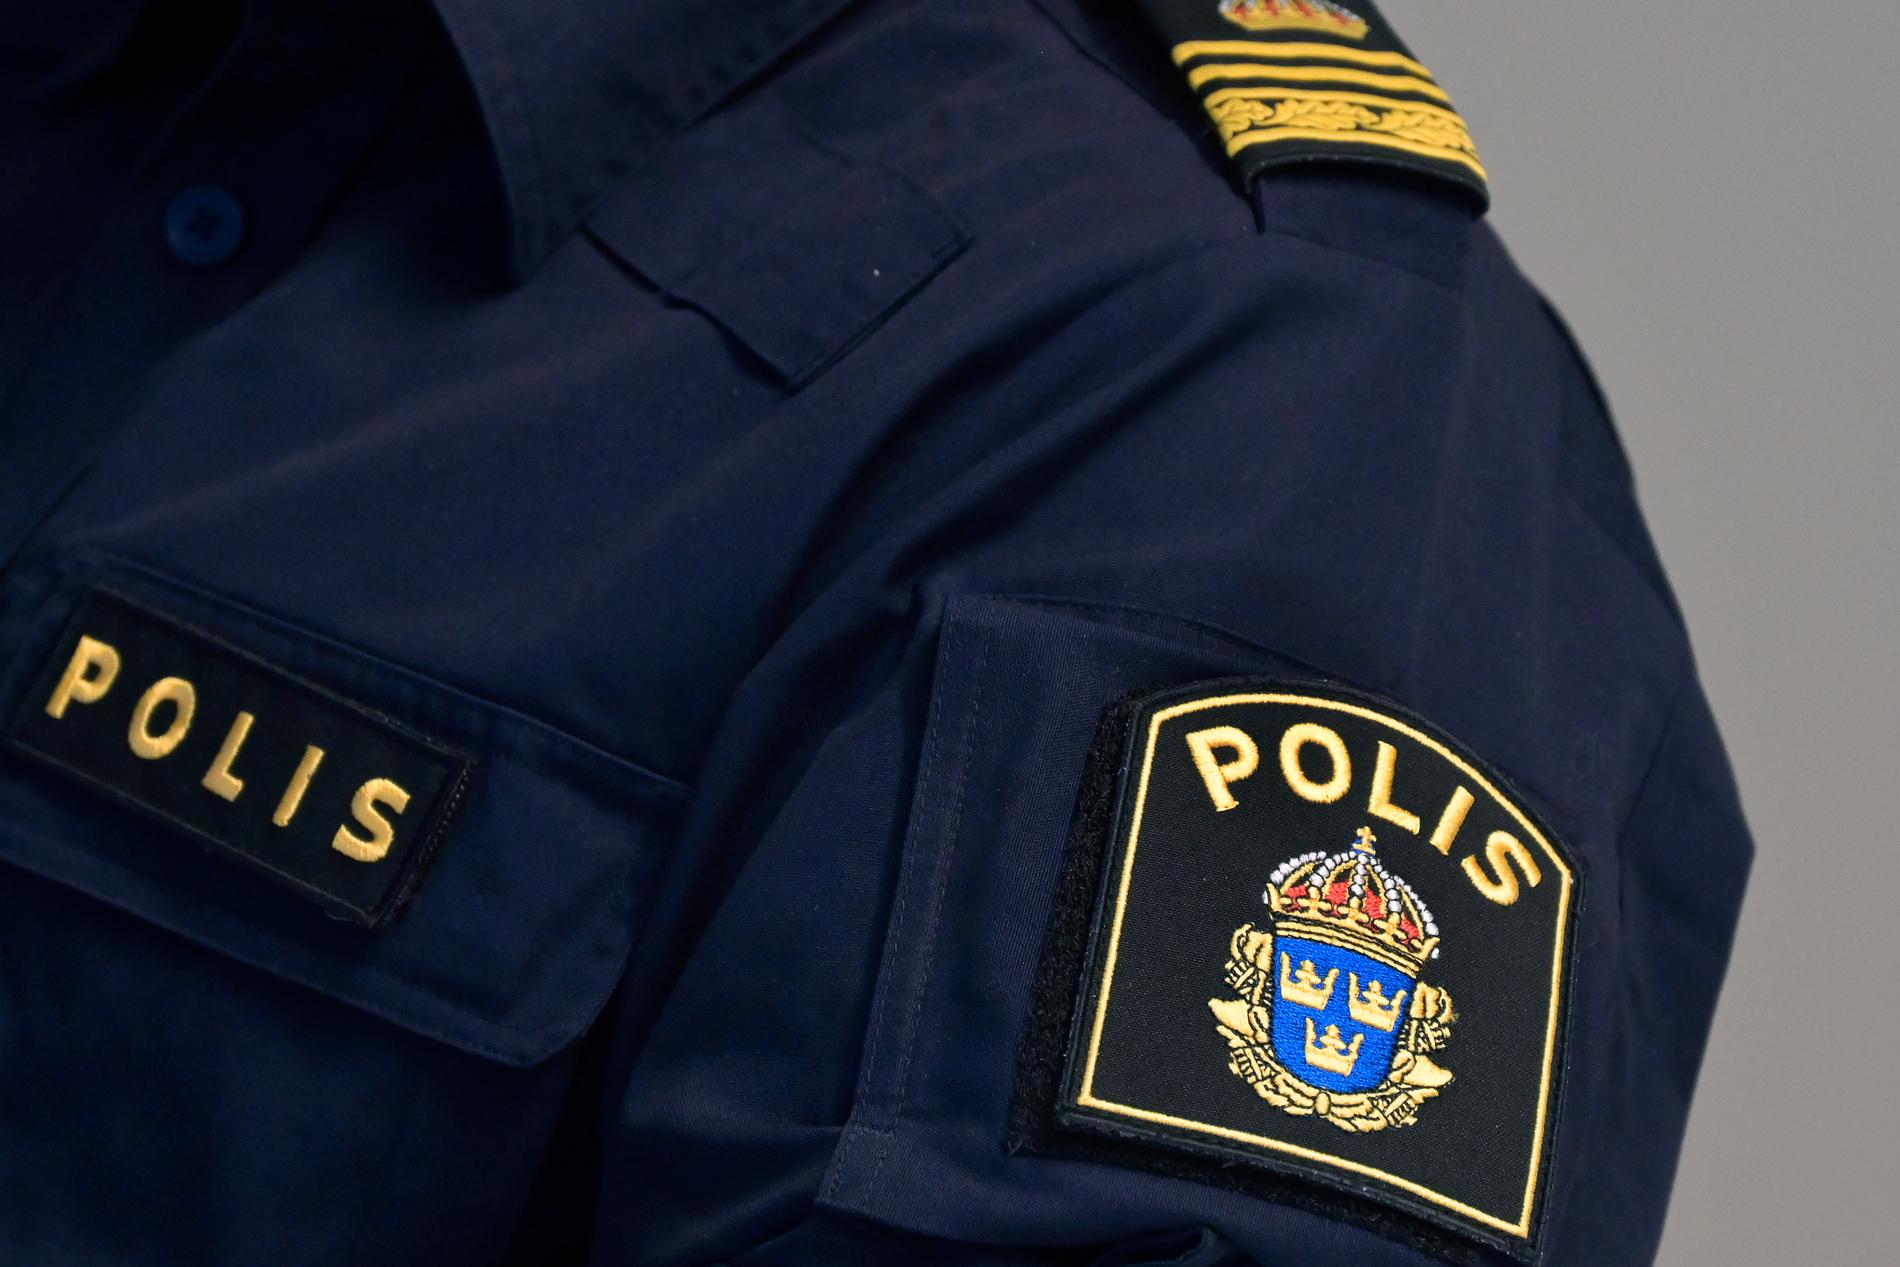 Chattjänsten har använts av hundratals kriminella i Sverige, enligt polisen. Arkivbild.